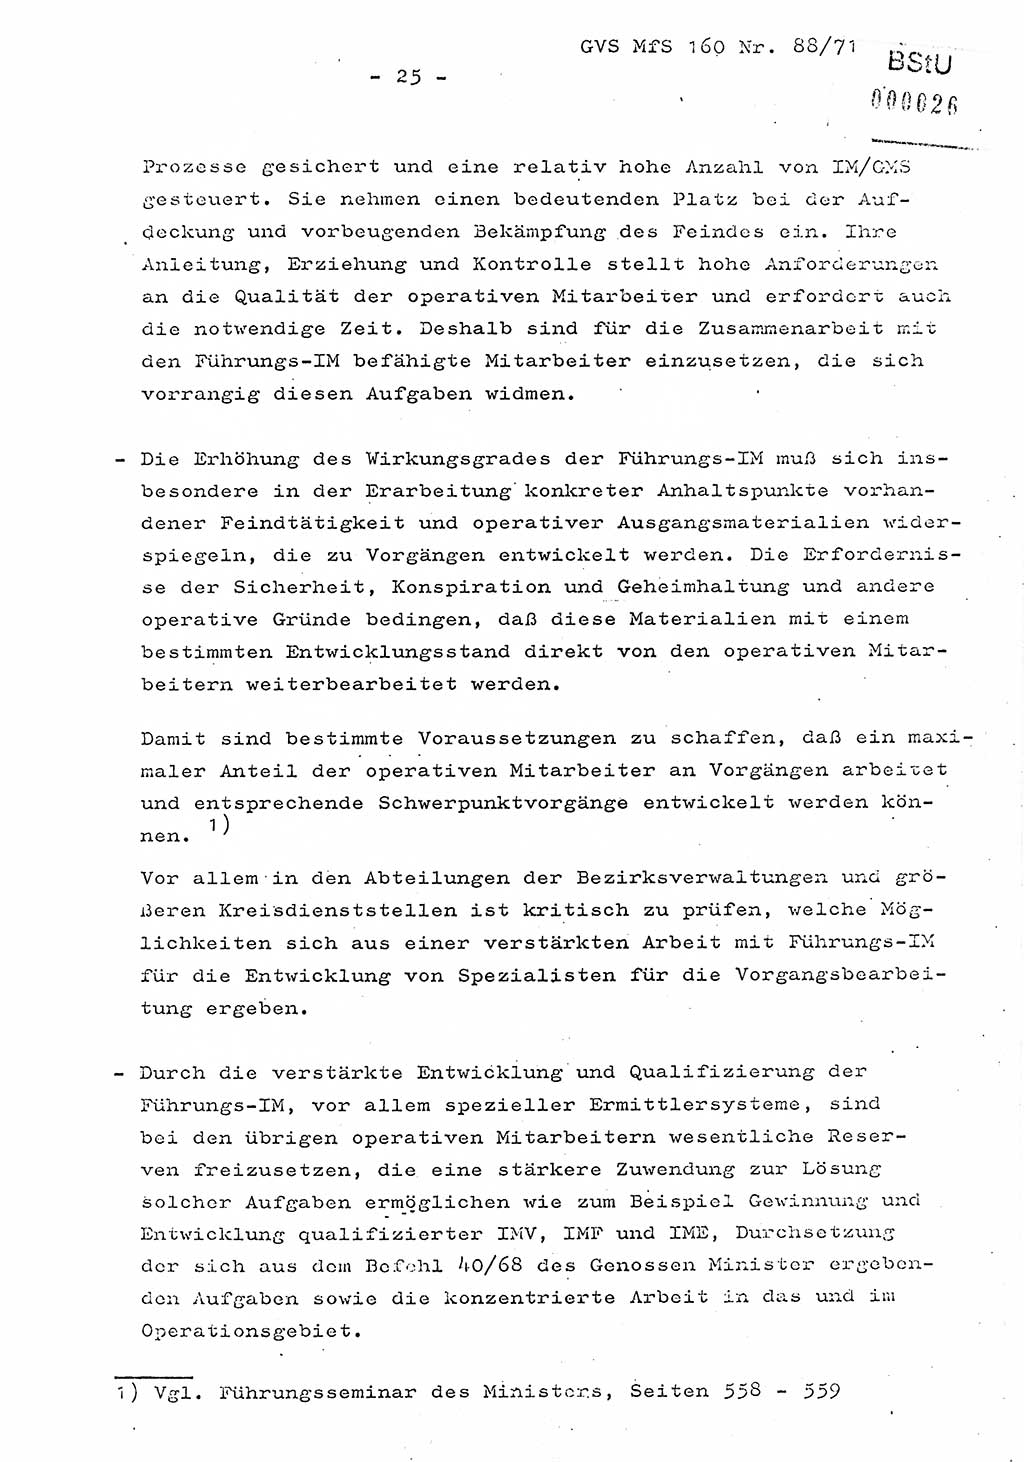 Dissertation Oberstleutnant Josef Schwarz (BV Schwerin), Major Fritz Amm (JHS), Hauptmann Peter Gräßler (JHS), Ministerium für Staatssicherheit (MfS) [Deutsche Demokratische Republik (DDR)], Juristische Hochschule (JHS), Geheime Verschlußsache (GVS) 160-88/71, Potsdam 1972, Seite 25 (Diss. MfS DDR JHS GVS 160-88/71 1972, S. 25)